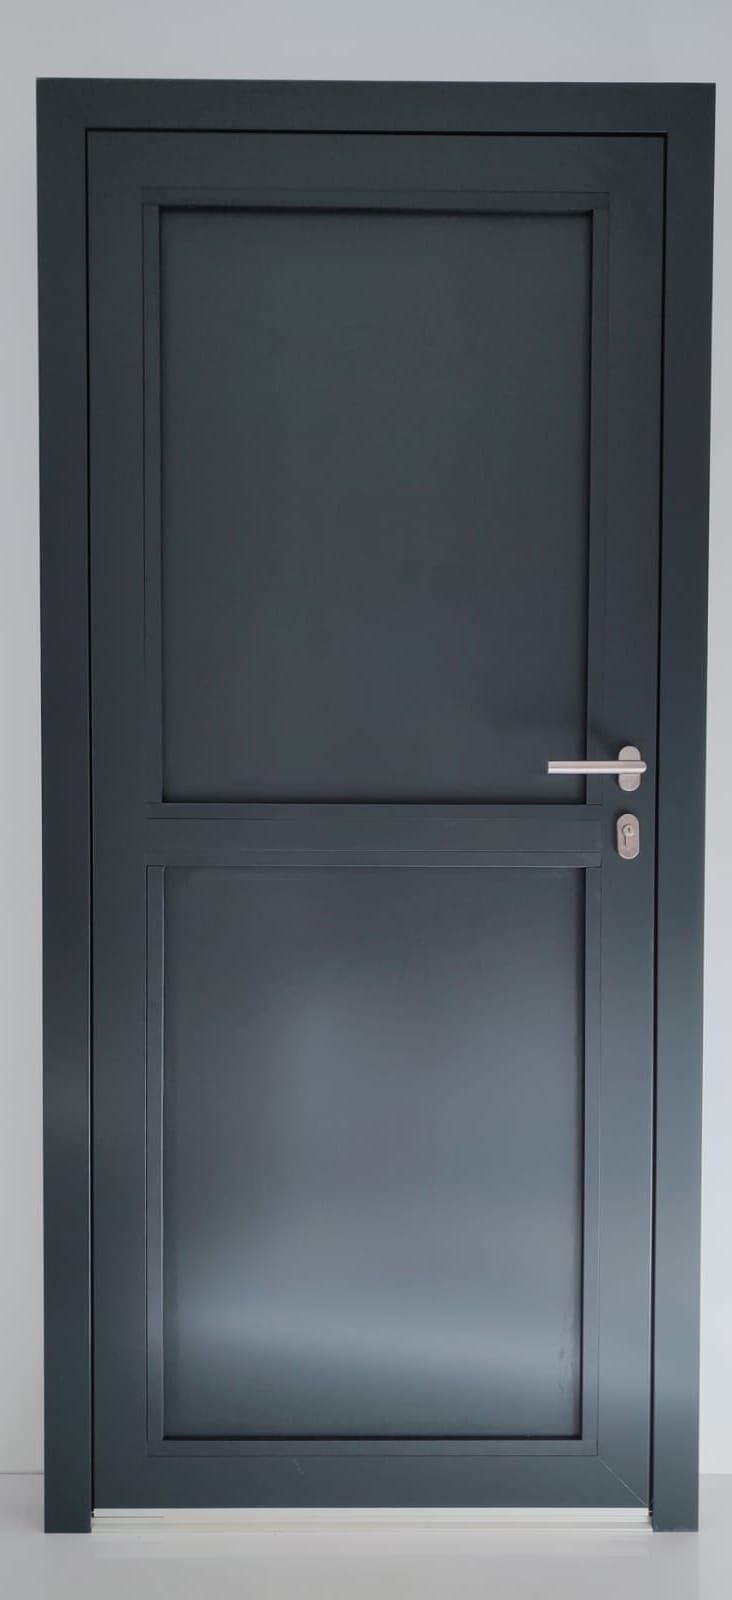 Drzwi aluminiowe zewnętrzne ciepłe masywne